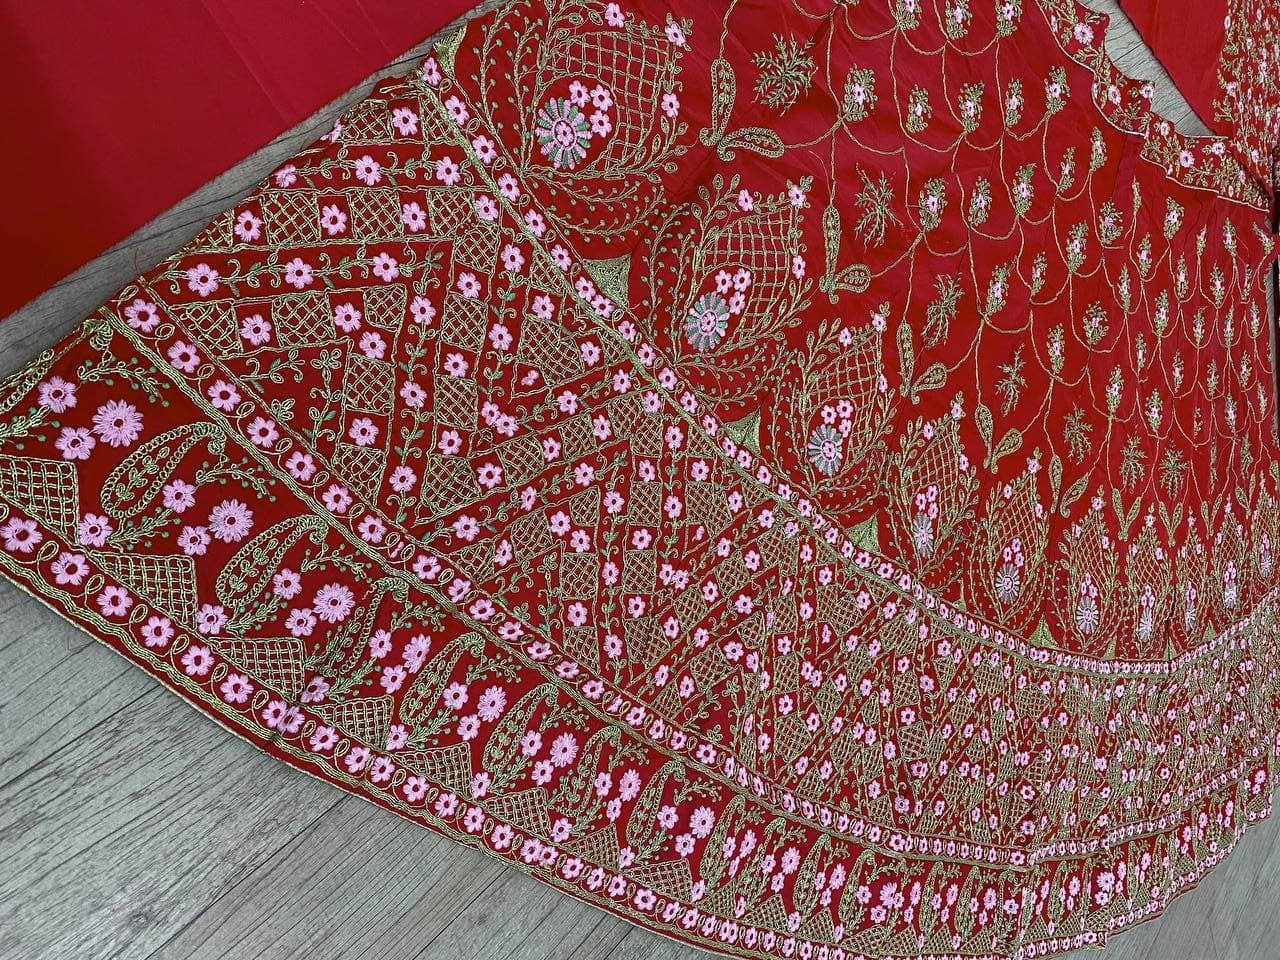 Red Lehenga Choli In Malai Satin Silk With Multi Embroidery Work